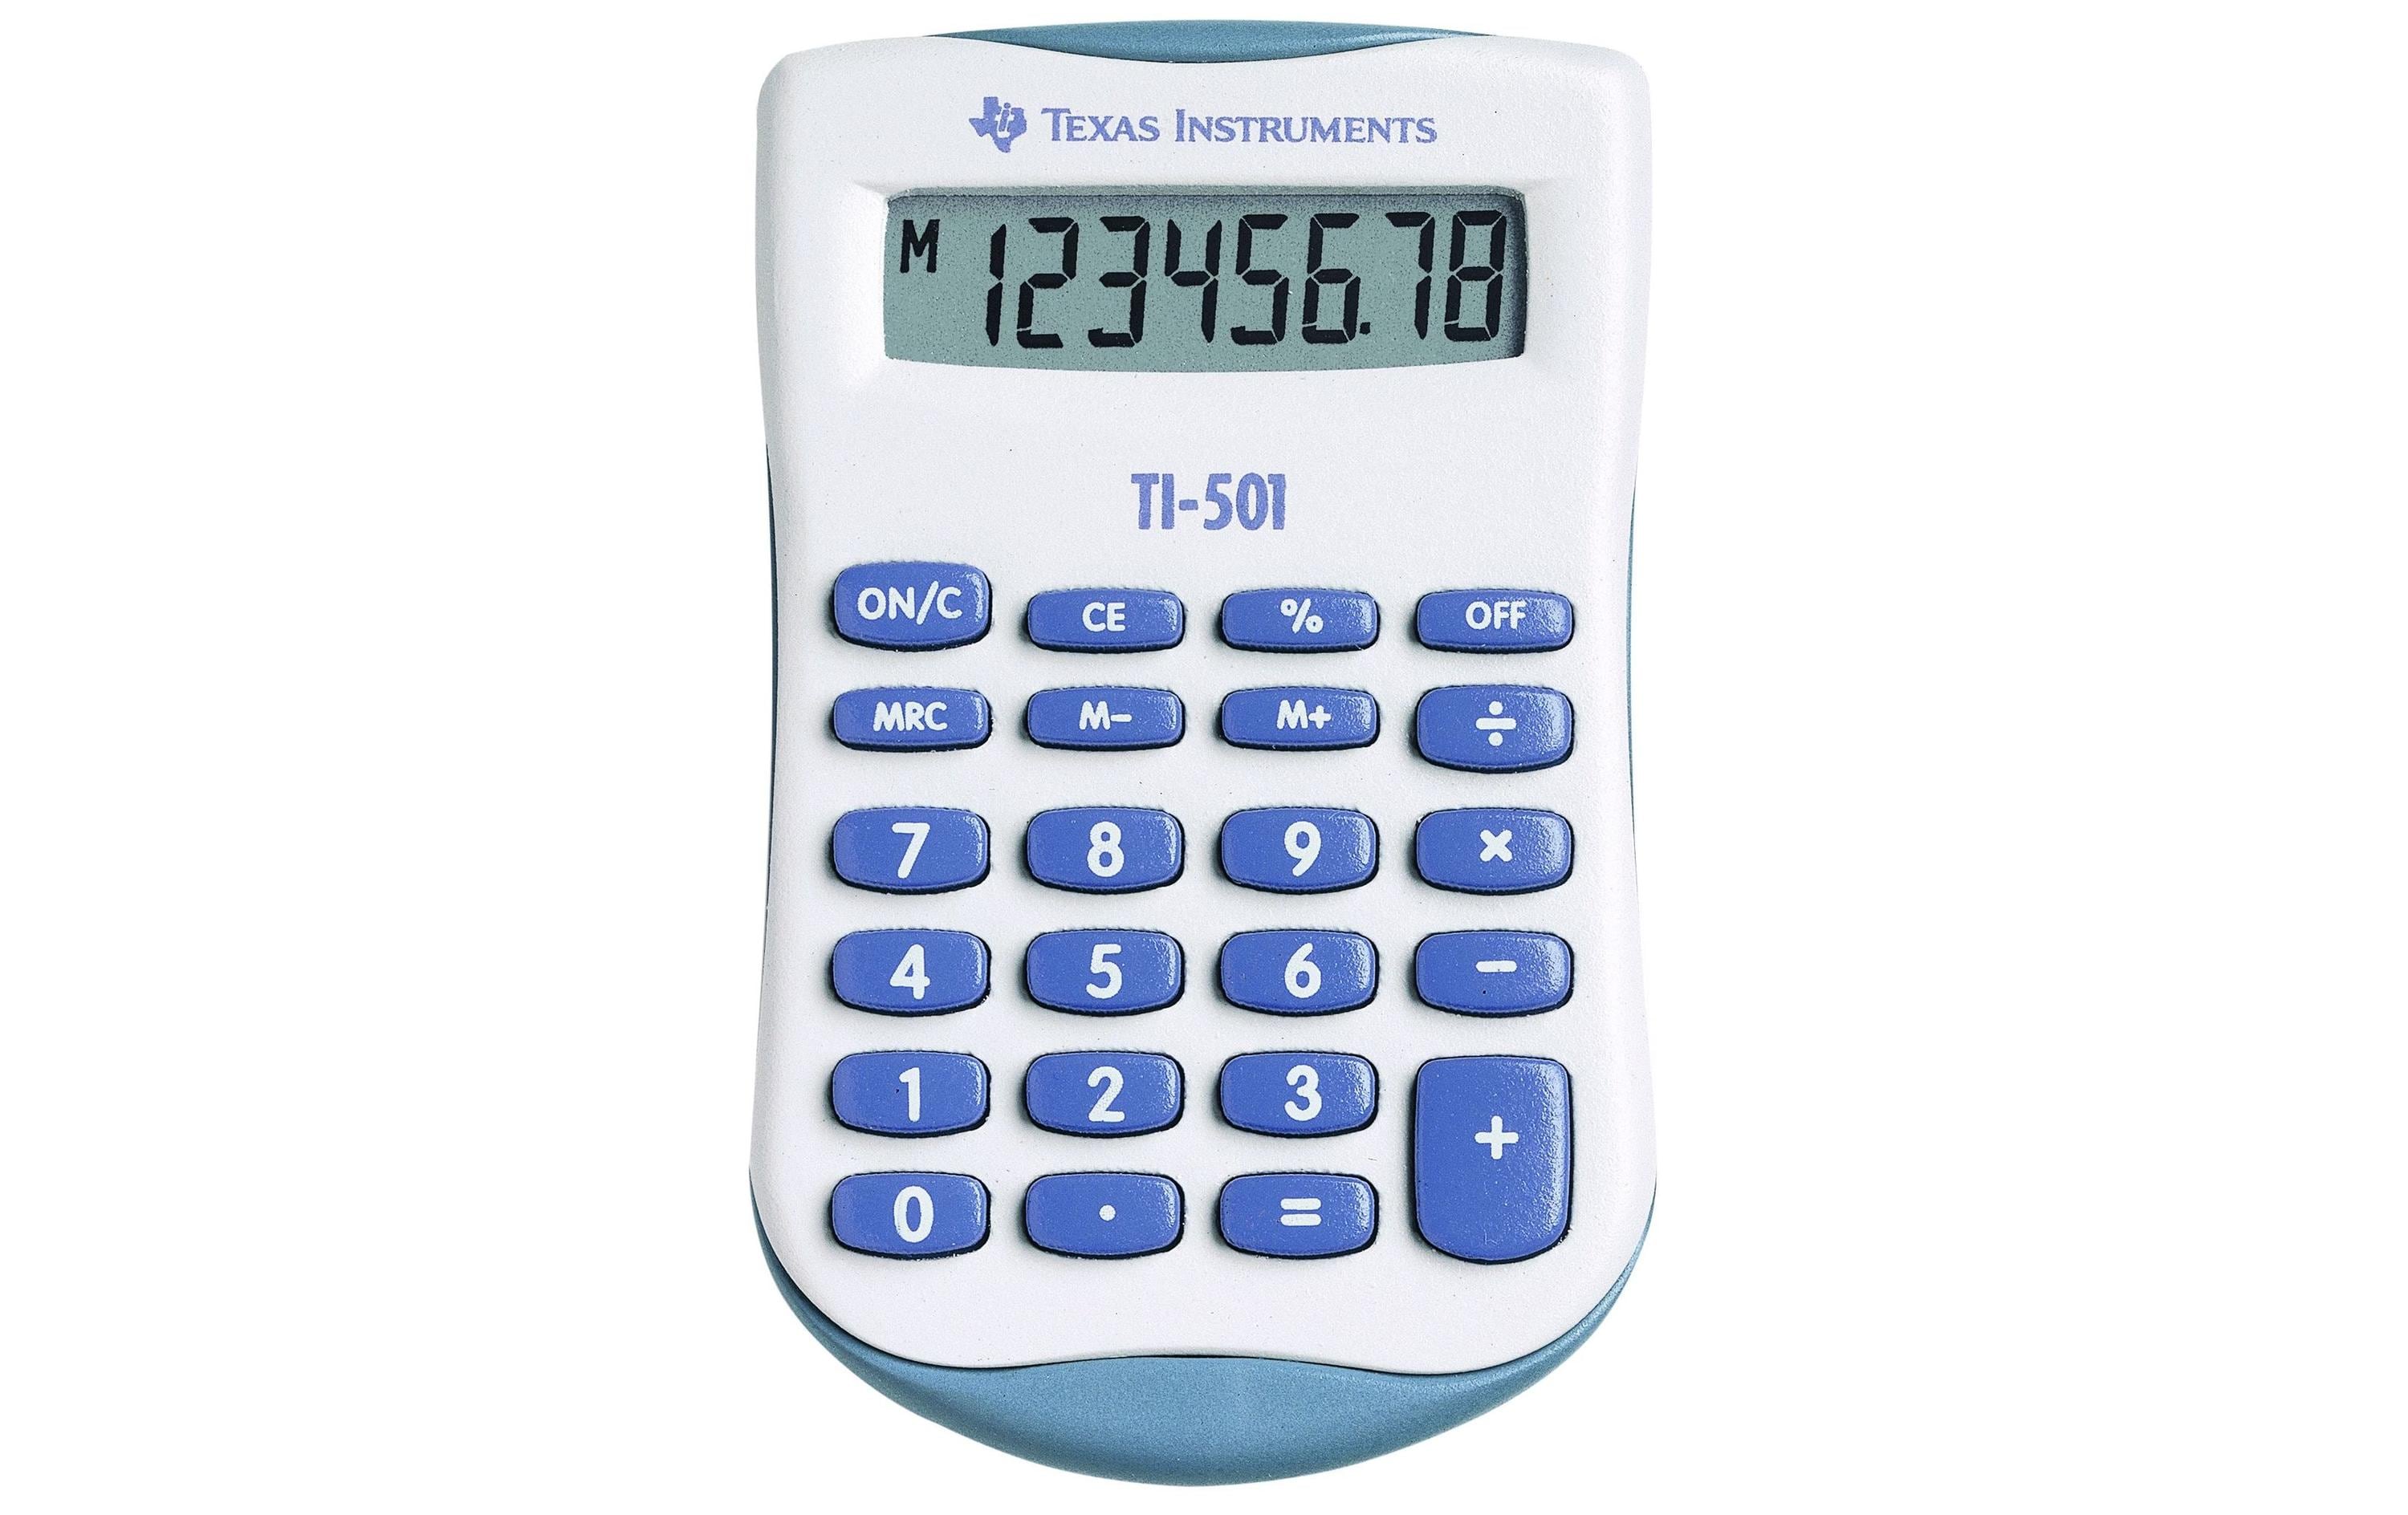 Texas Instruments Taschenrechner TI-501